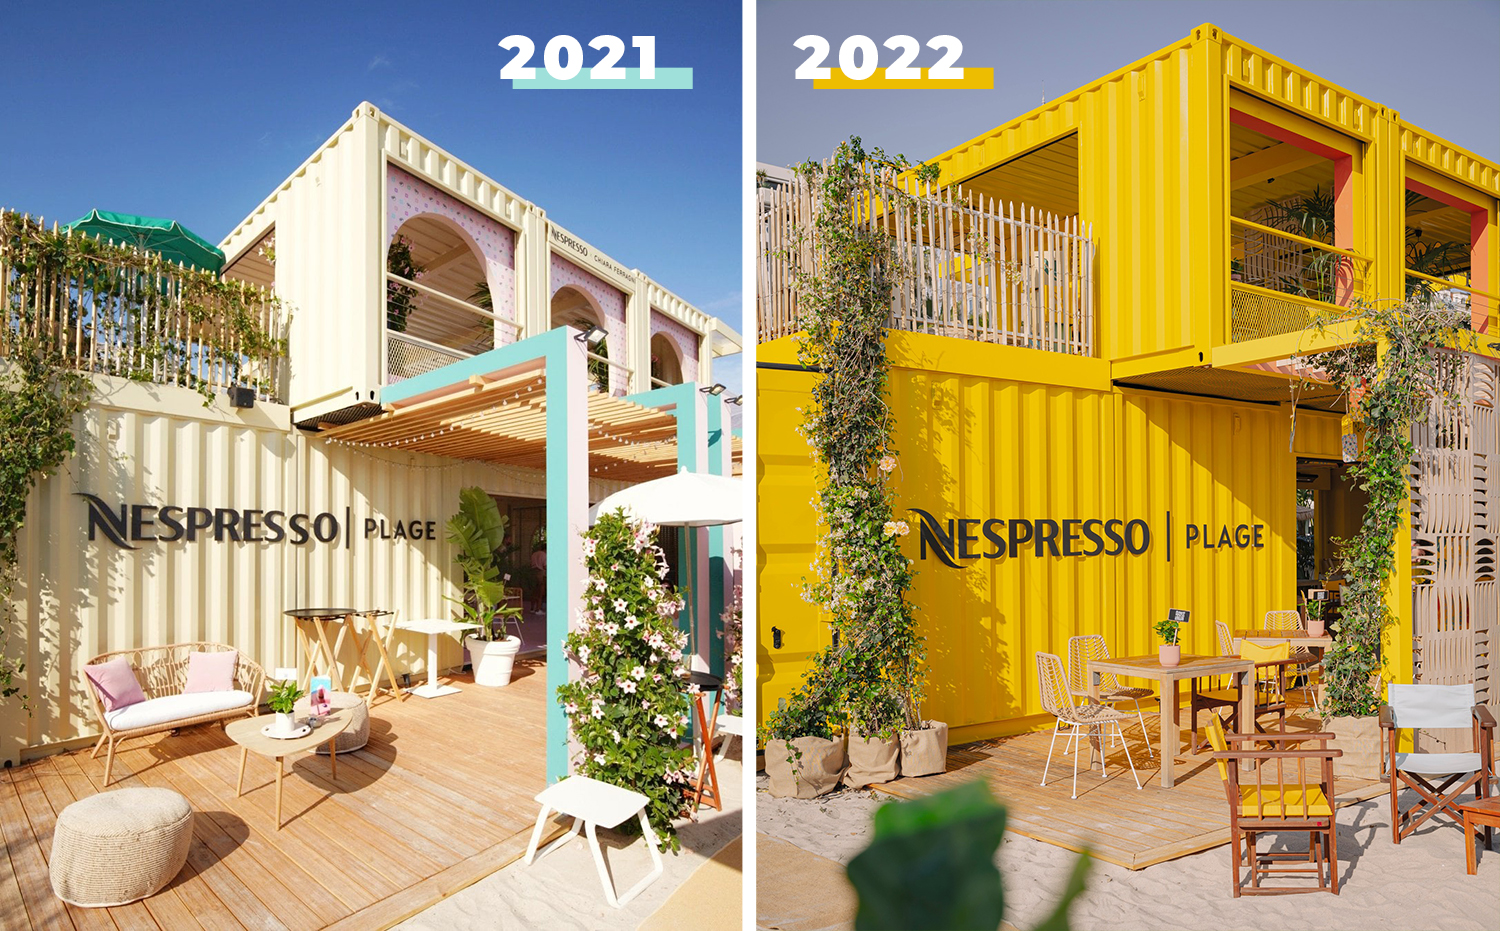 Maison Eco 3_Nespresoo Plage_2021 2022_copie